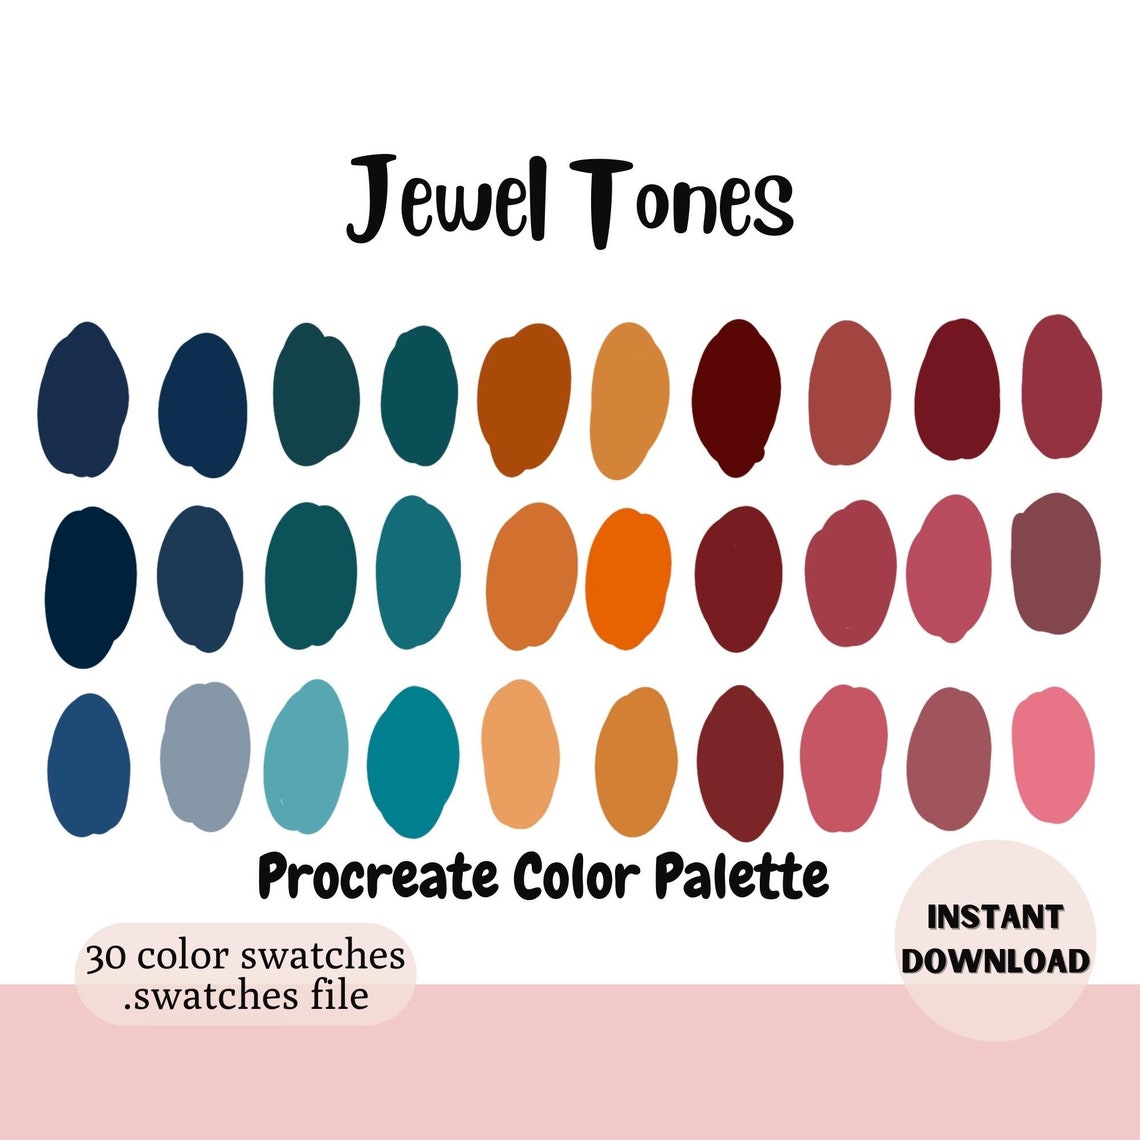 Procreate Color Palette Color Swatches iPad Color Palette - Etsy